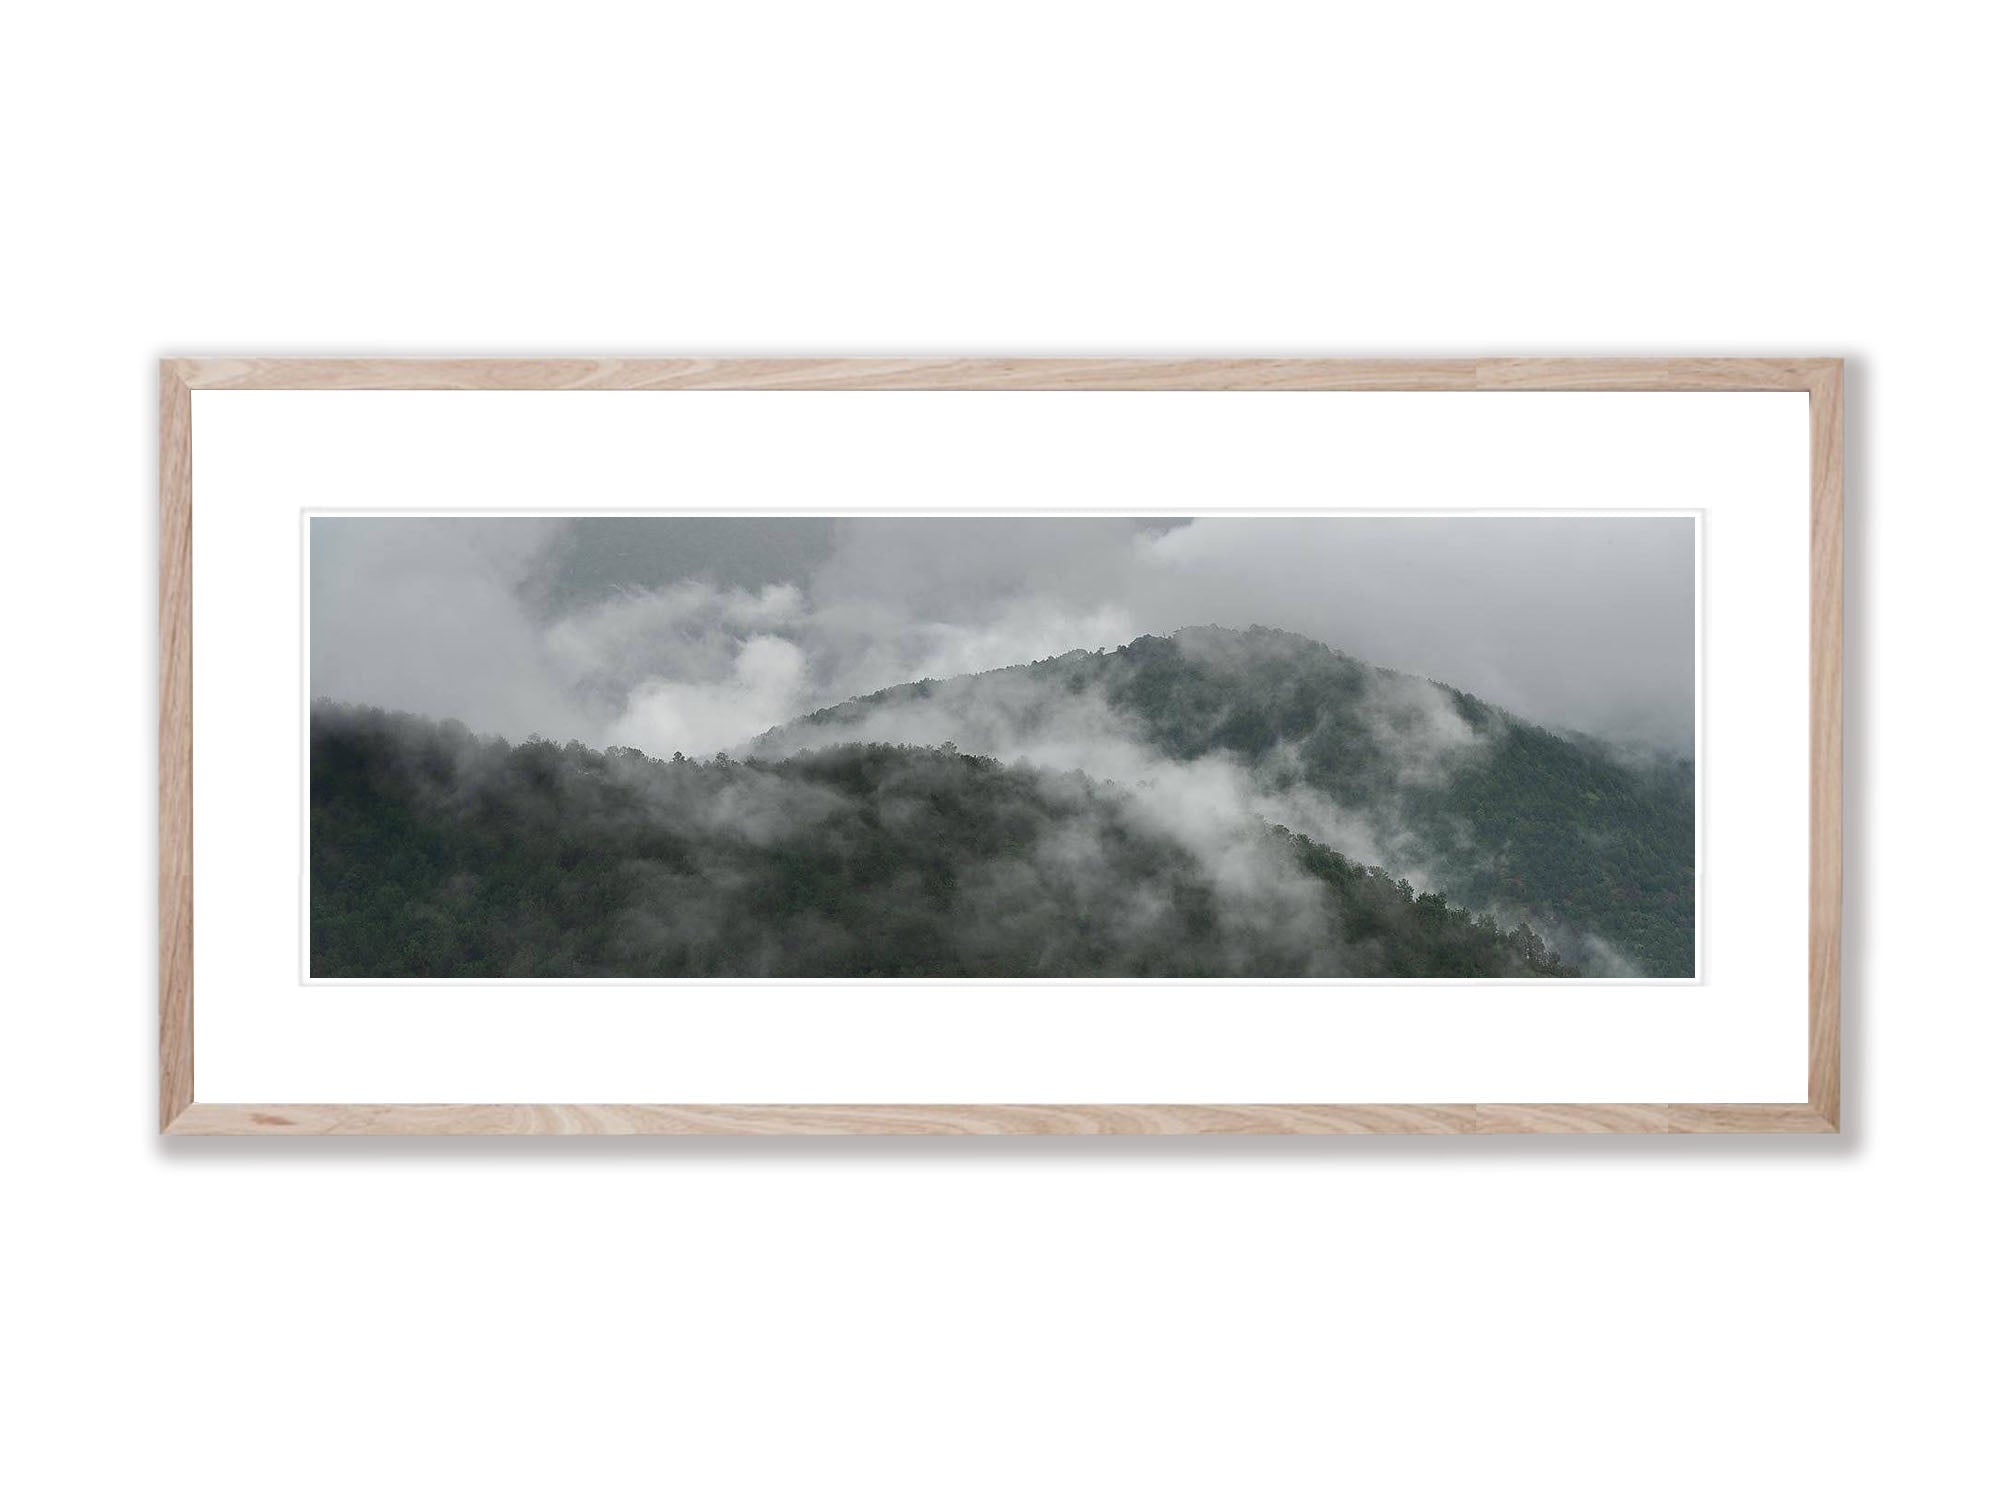 Mist over the Mountains, Bhutan